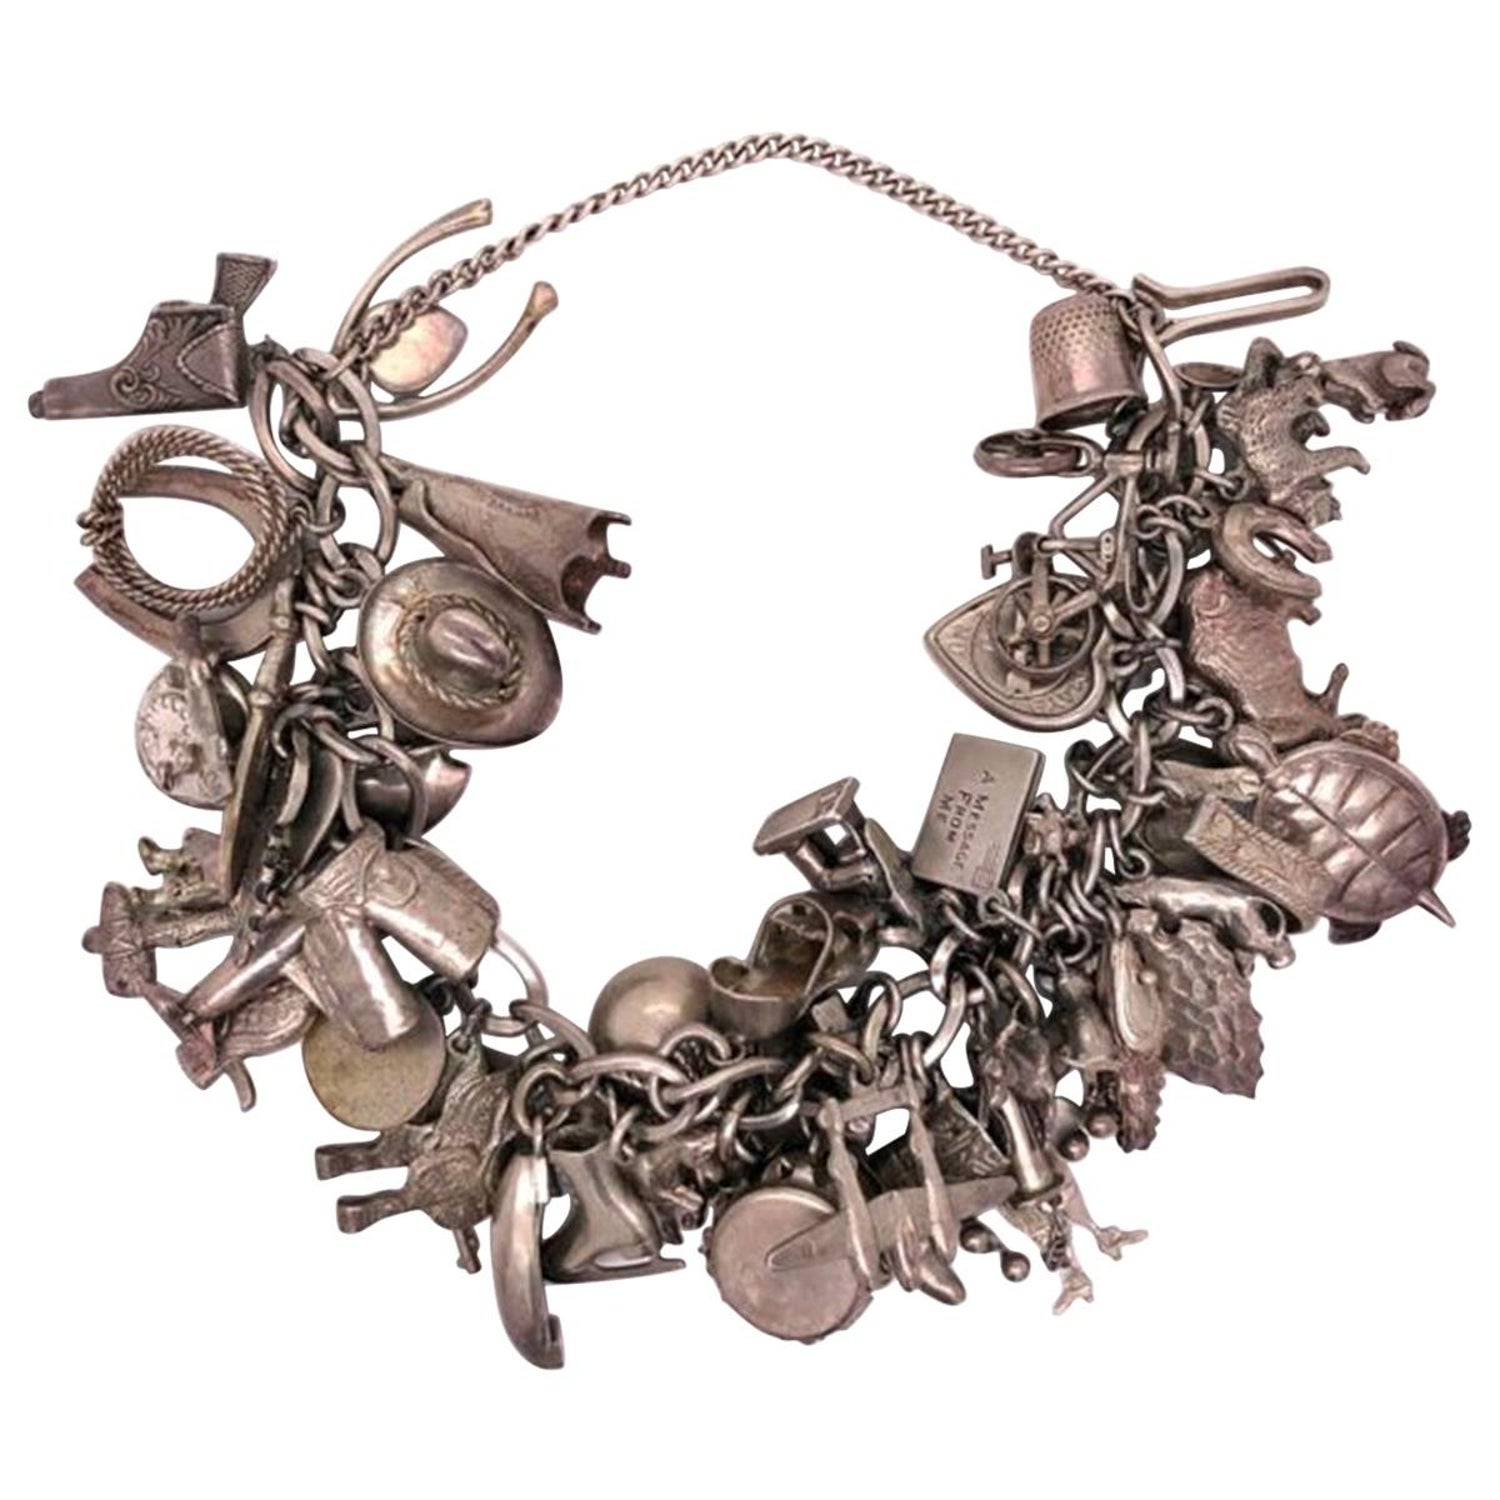 Vintage Paris charms bracelet in silver metal